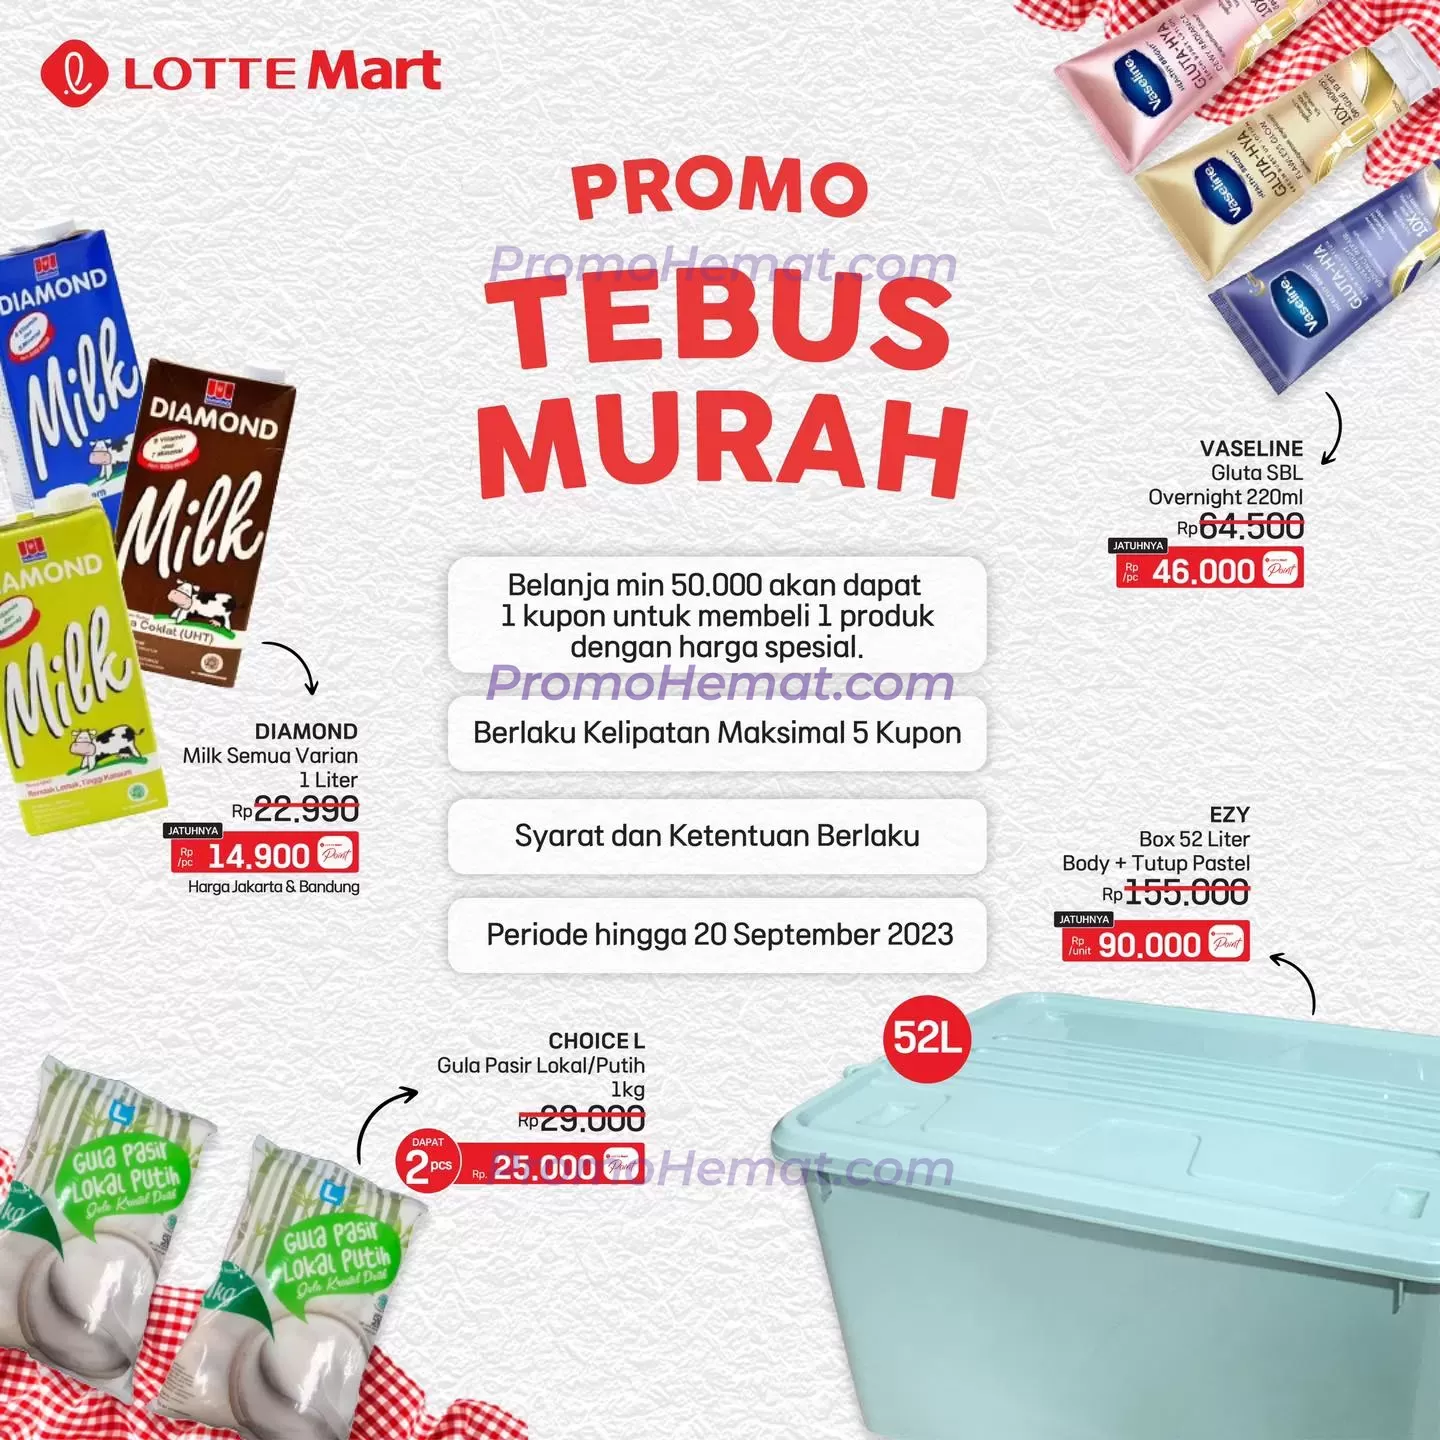 Promo Tebus Murah Lottemart Periode Hingga 20 September 2023 image_1